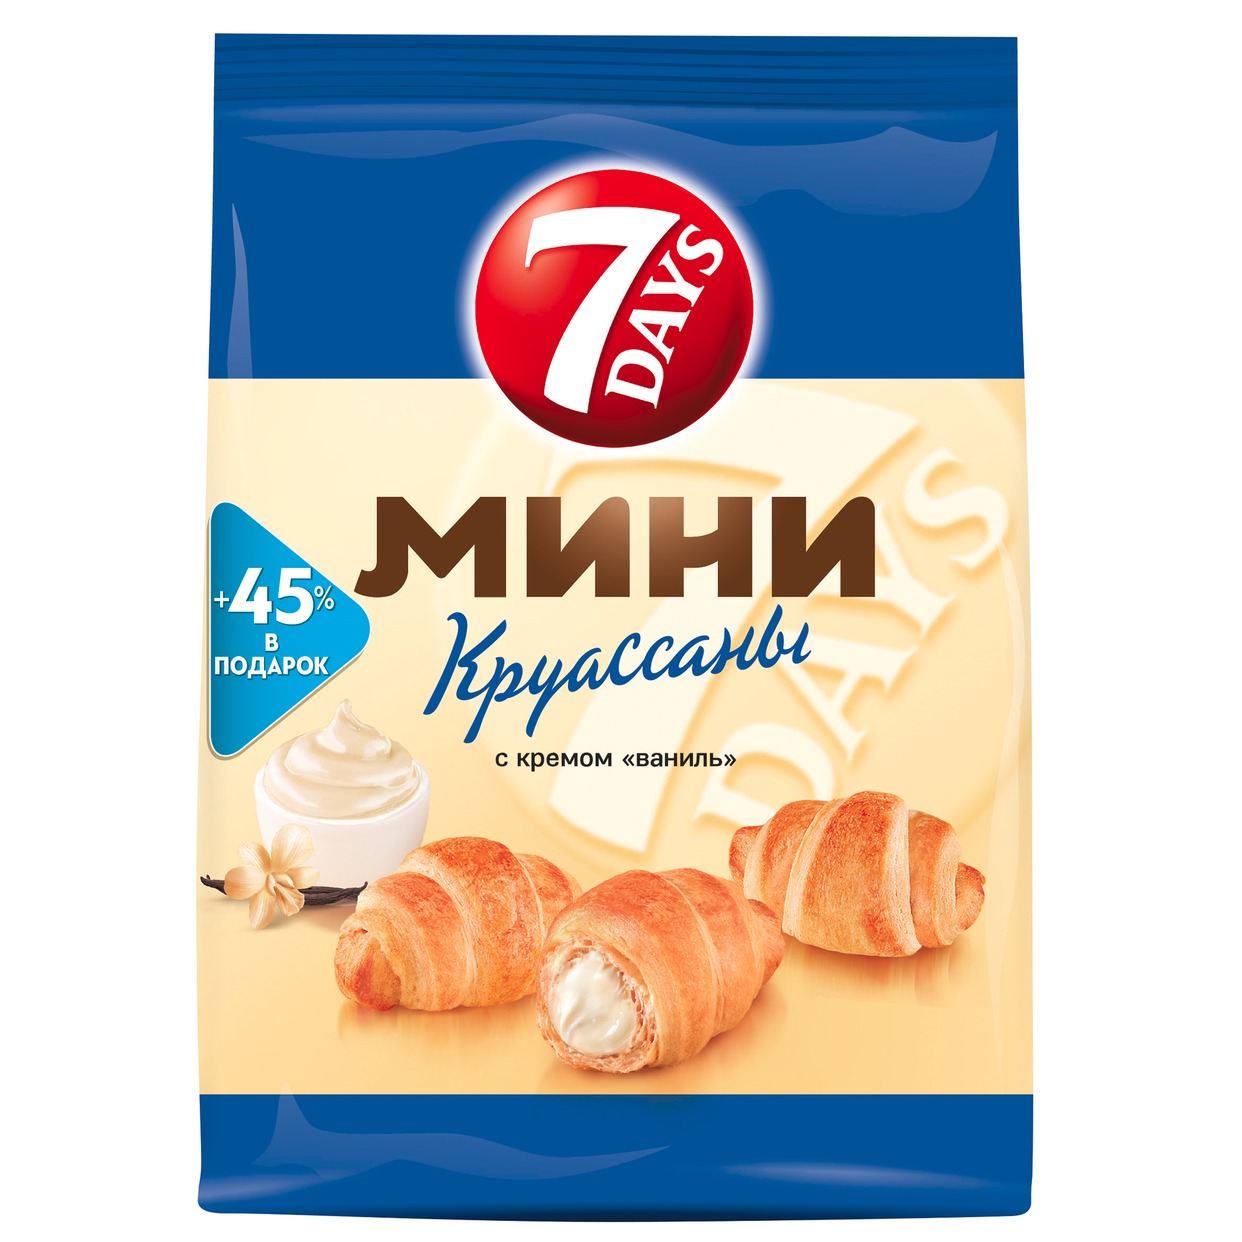 7DAYS Мини Круассаны с кремом со вкусом "Ваниль" 105г. по акции в Пятерочке